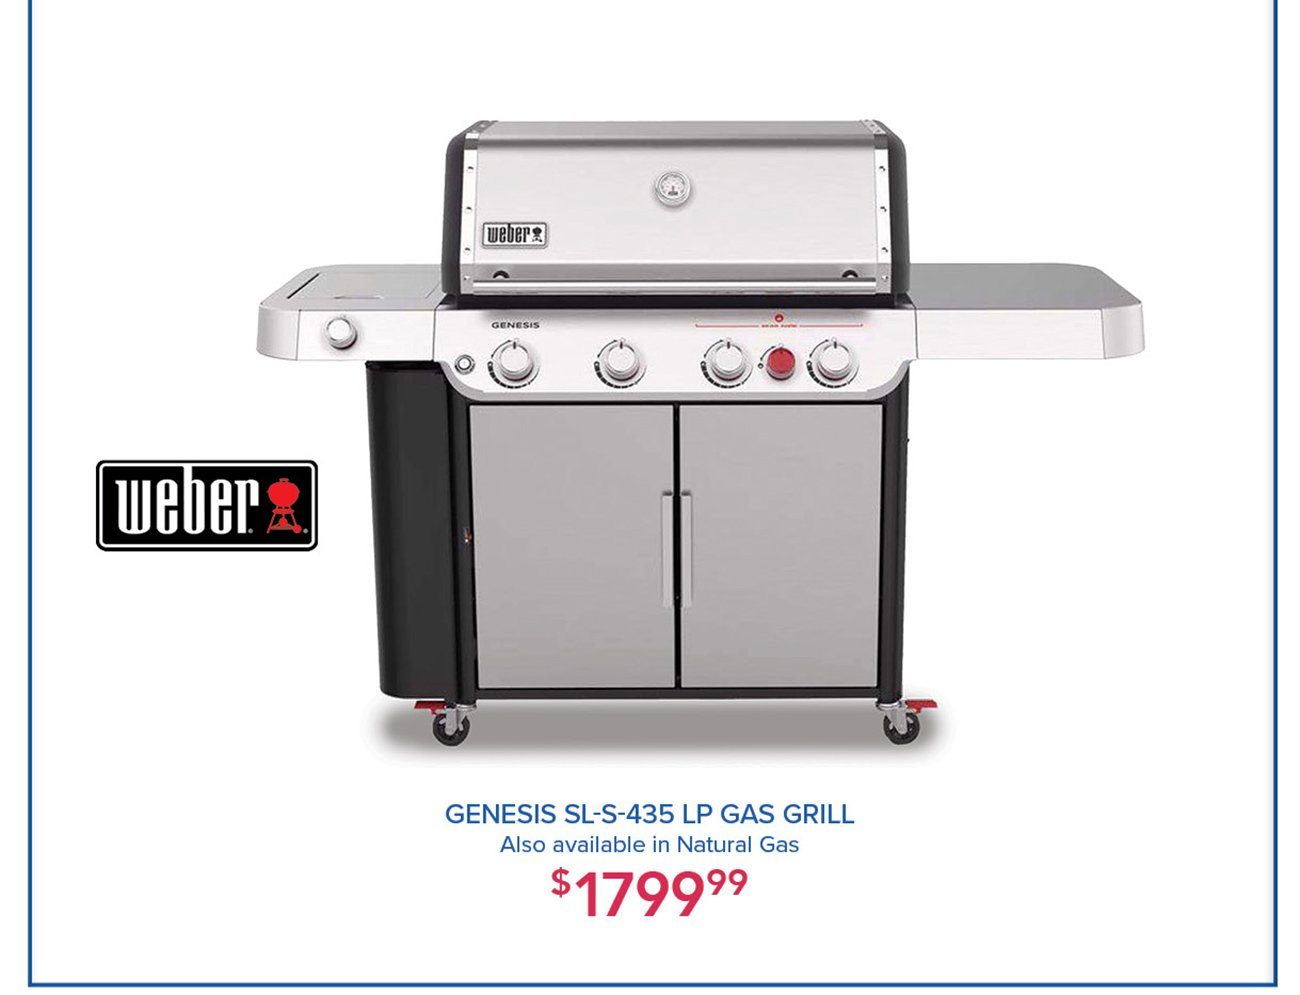 Weber-genesis-SL-S-435-gas-grill